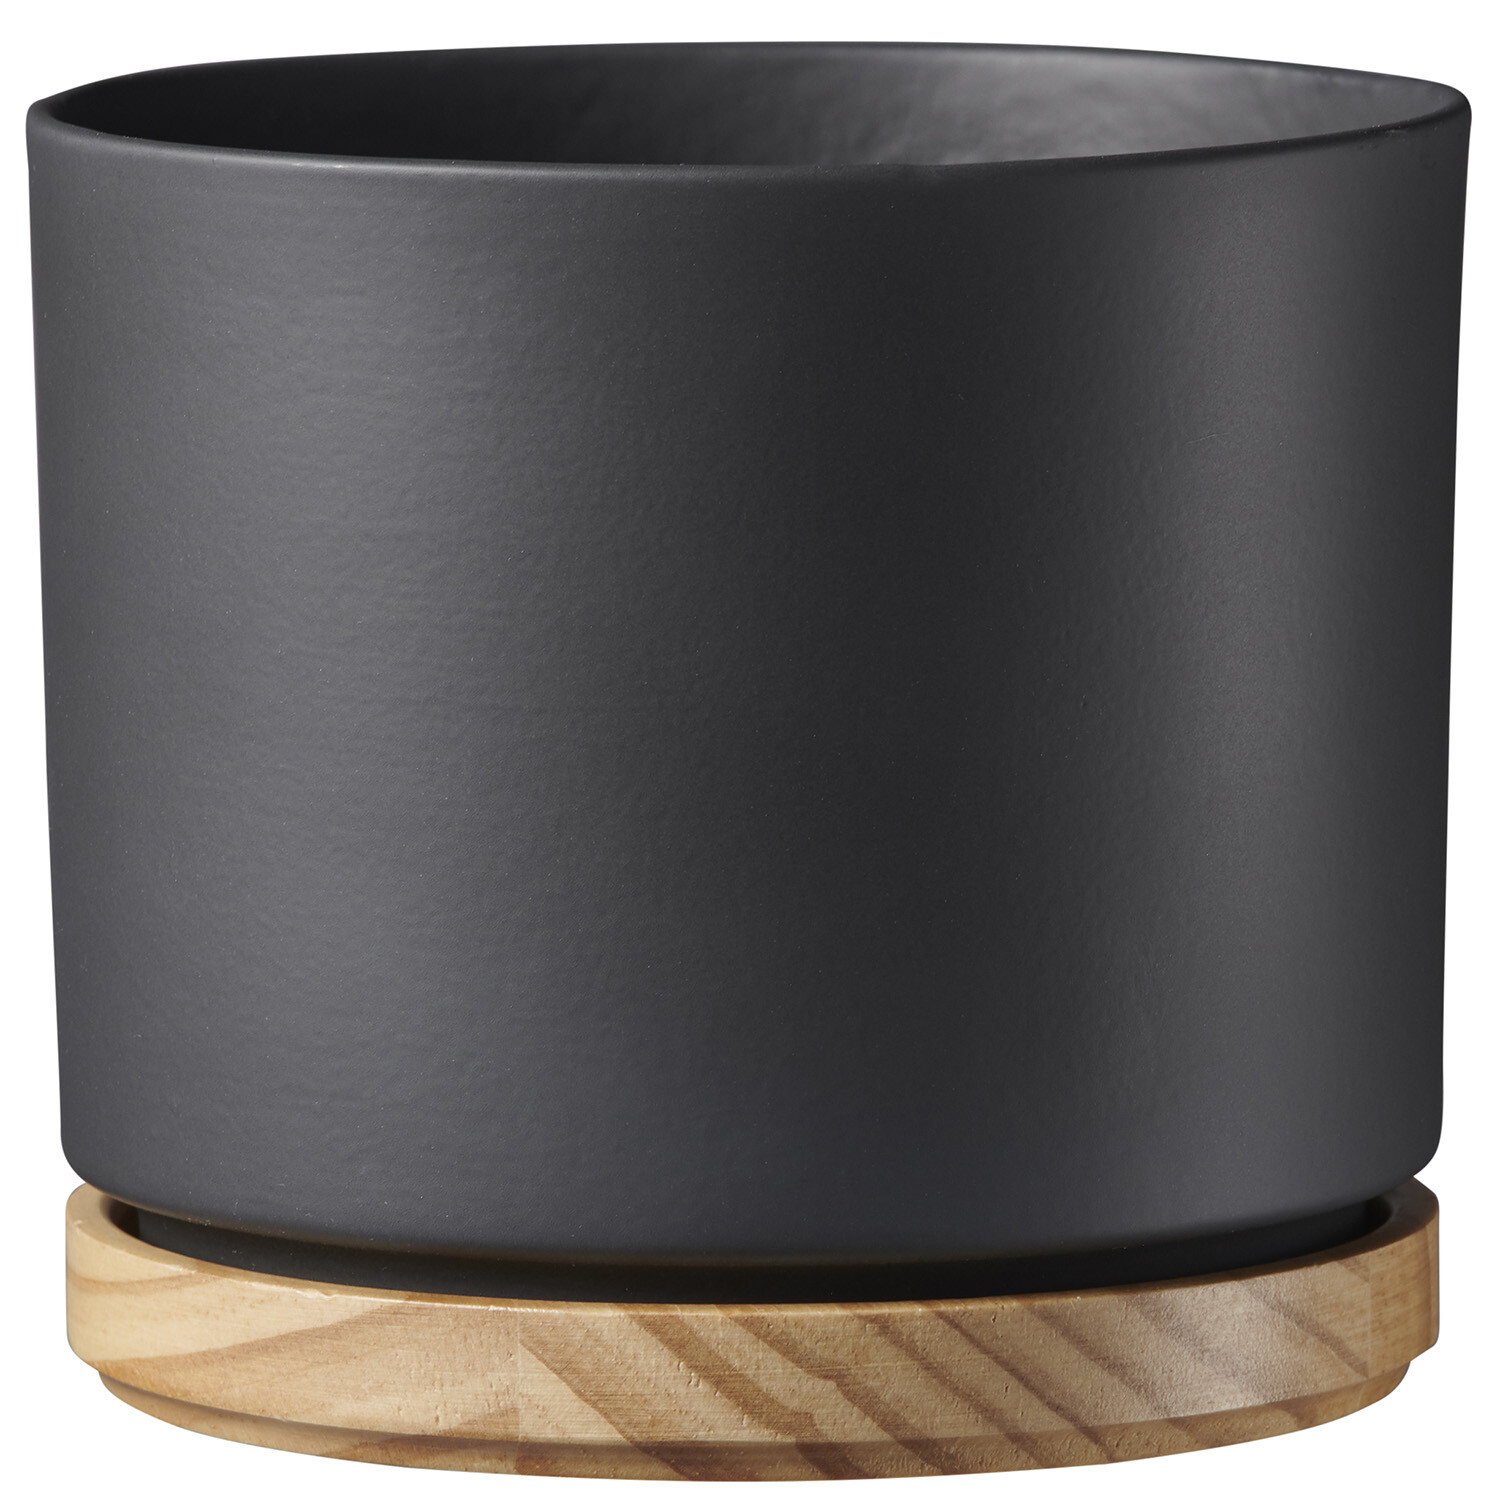 Oslo Pot with Wood Base - Black Image